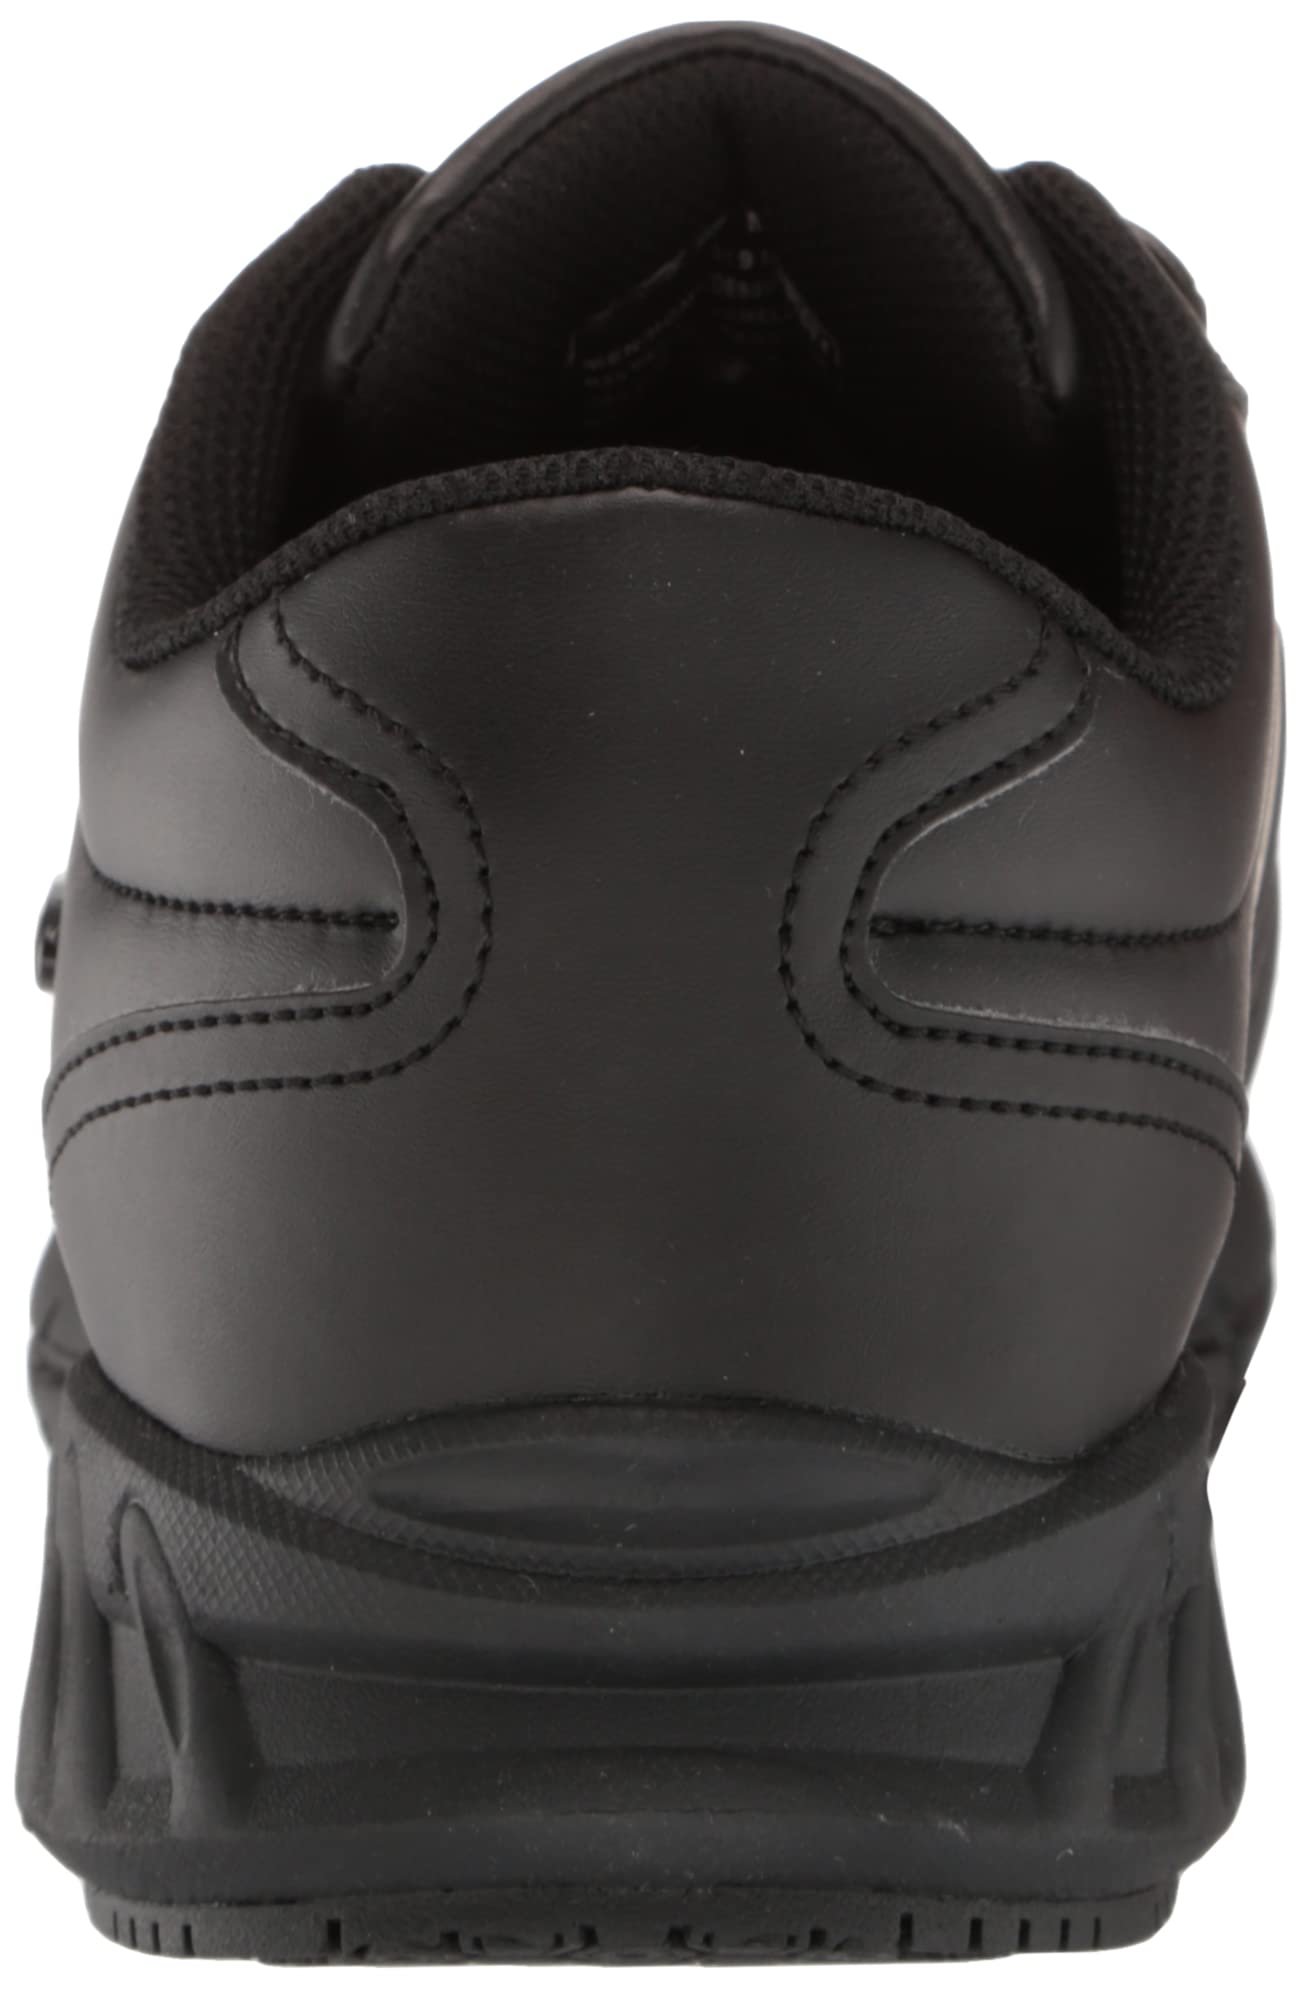 Lugz Men's Grapple Slip-Resistant Food Service Shoe